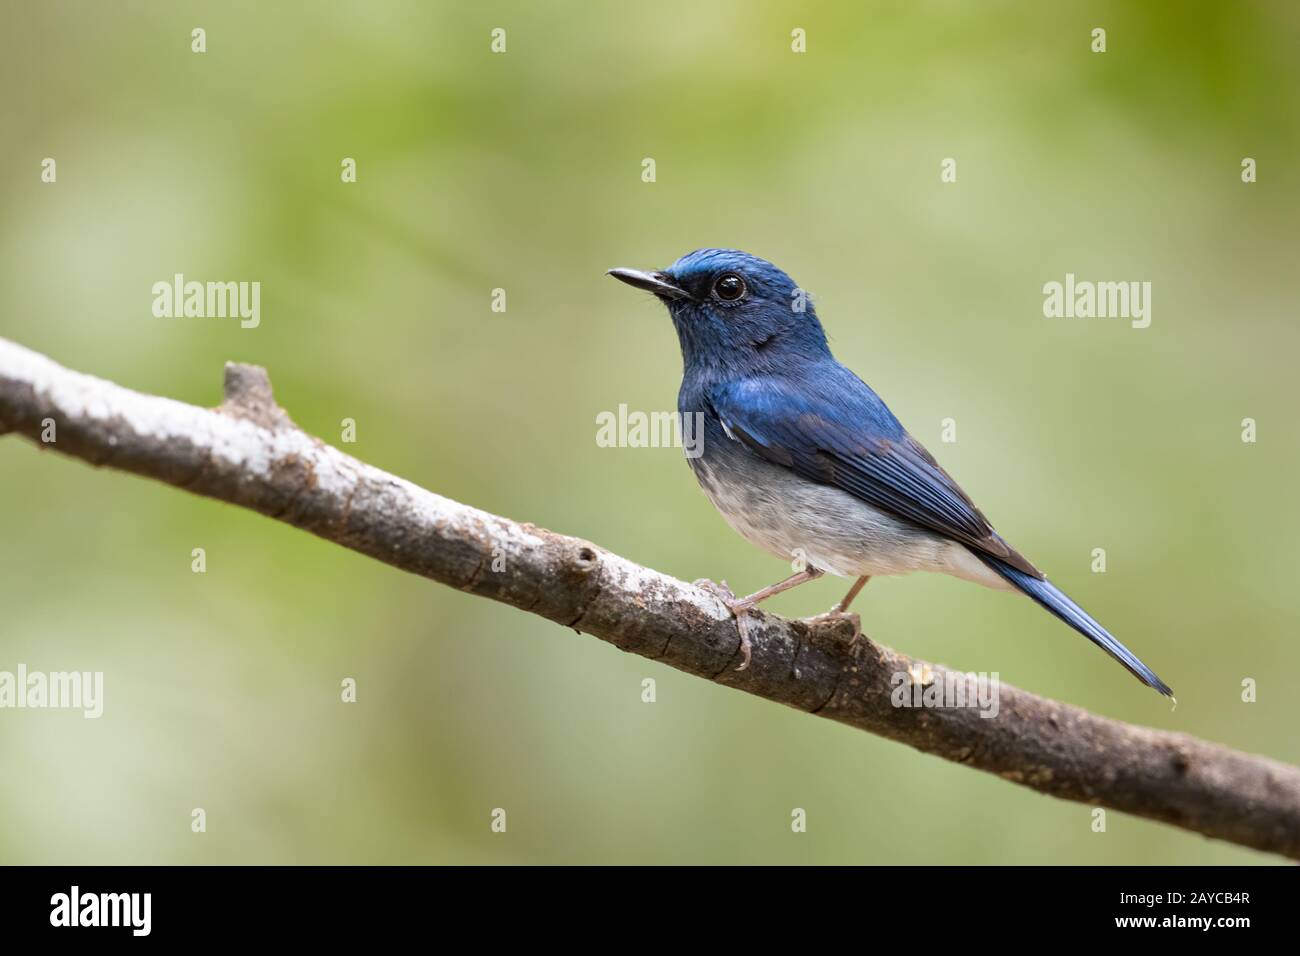 Le Moucherolle bleu de Hainan (Cyornis hainanus) est une espèce d'oiseau de la famille des Muscicapidae. Banque D'Images